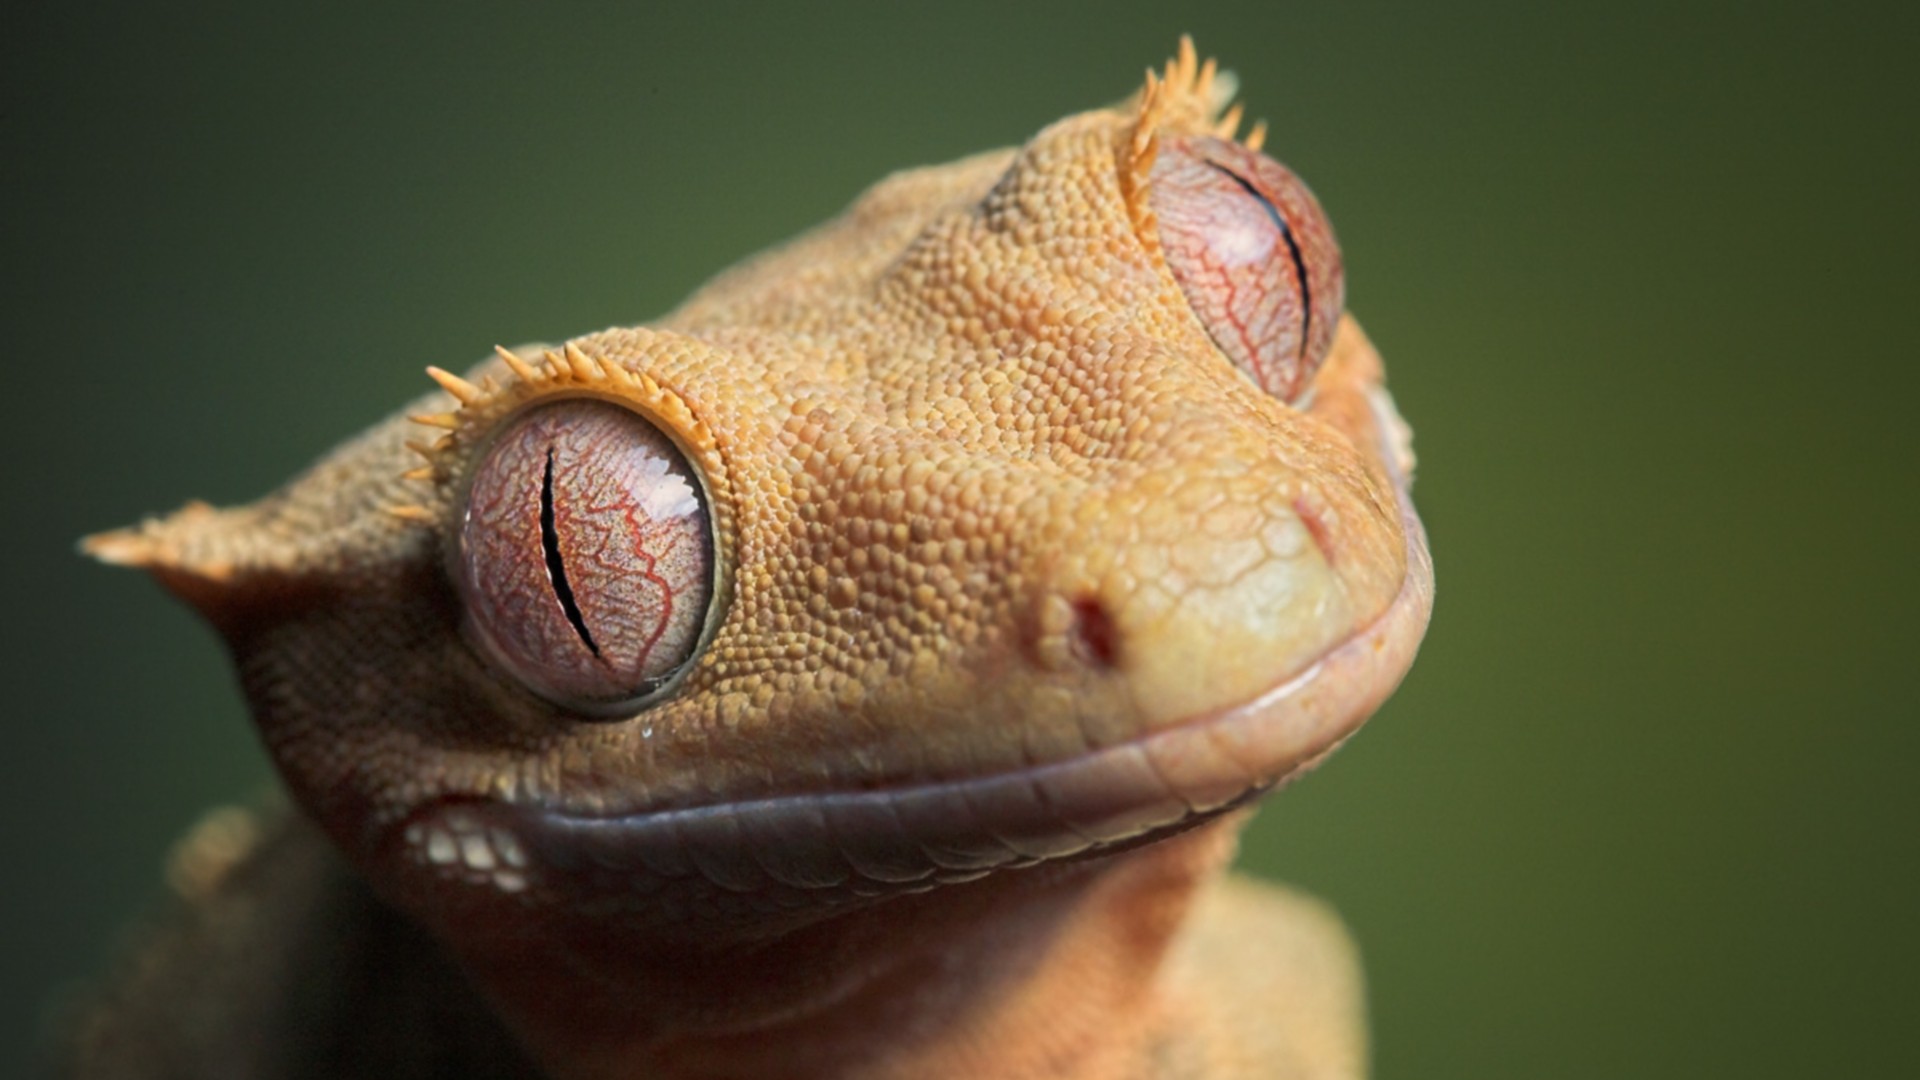 General 1920x1080 animals gecko eyes reptiles closeup animal eyes